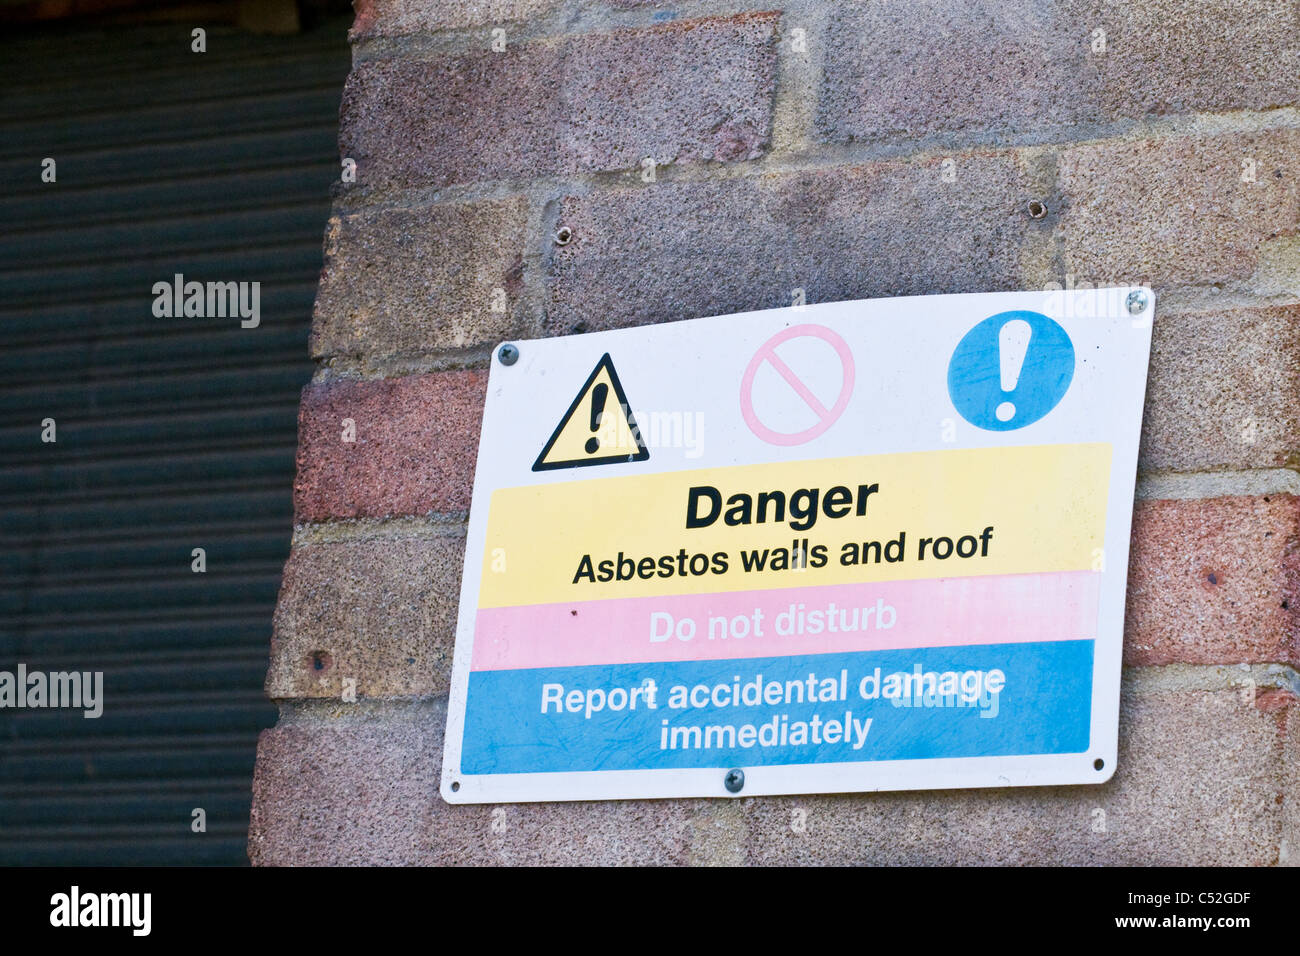 Gefahr Asbest Wände und das Dach zu unterzeichnen, nicht stören, Unfallschäden sofort melden Stockfoto